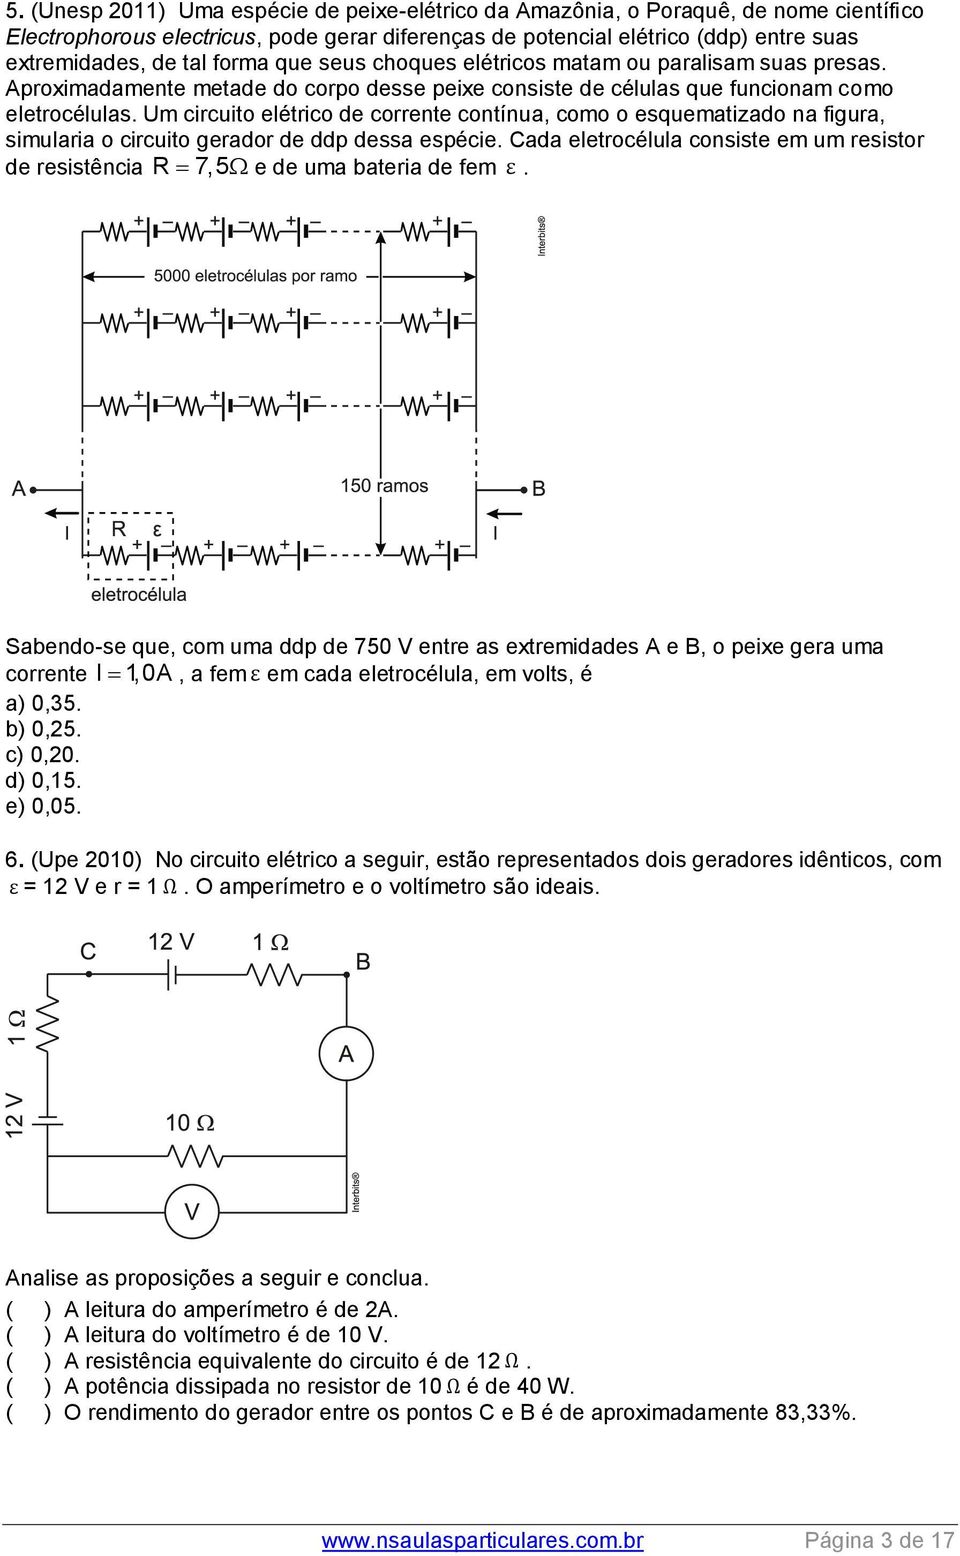 Um circuito elétrico de corrente contínua, como o esquematizado na figura, simularia o circuito gerador de ddp dessa espécie.